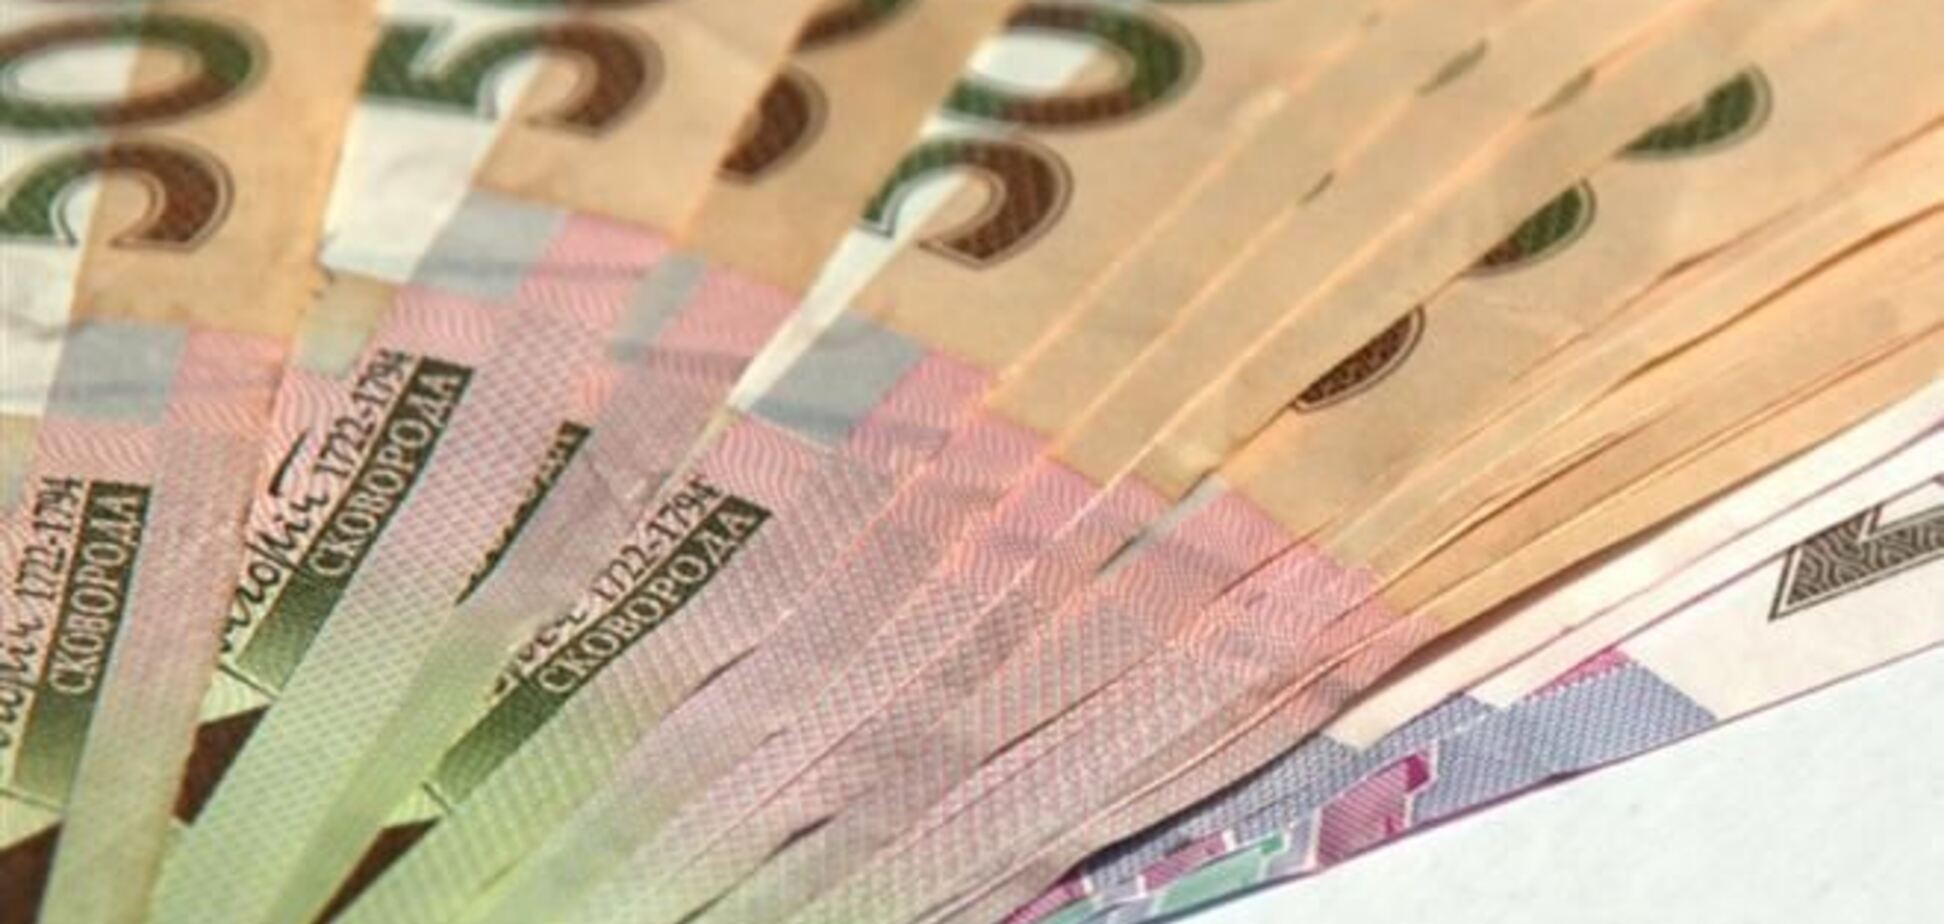 НБУ запретил продавать валюту в одни руки более чем на 15 тыс грн